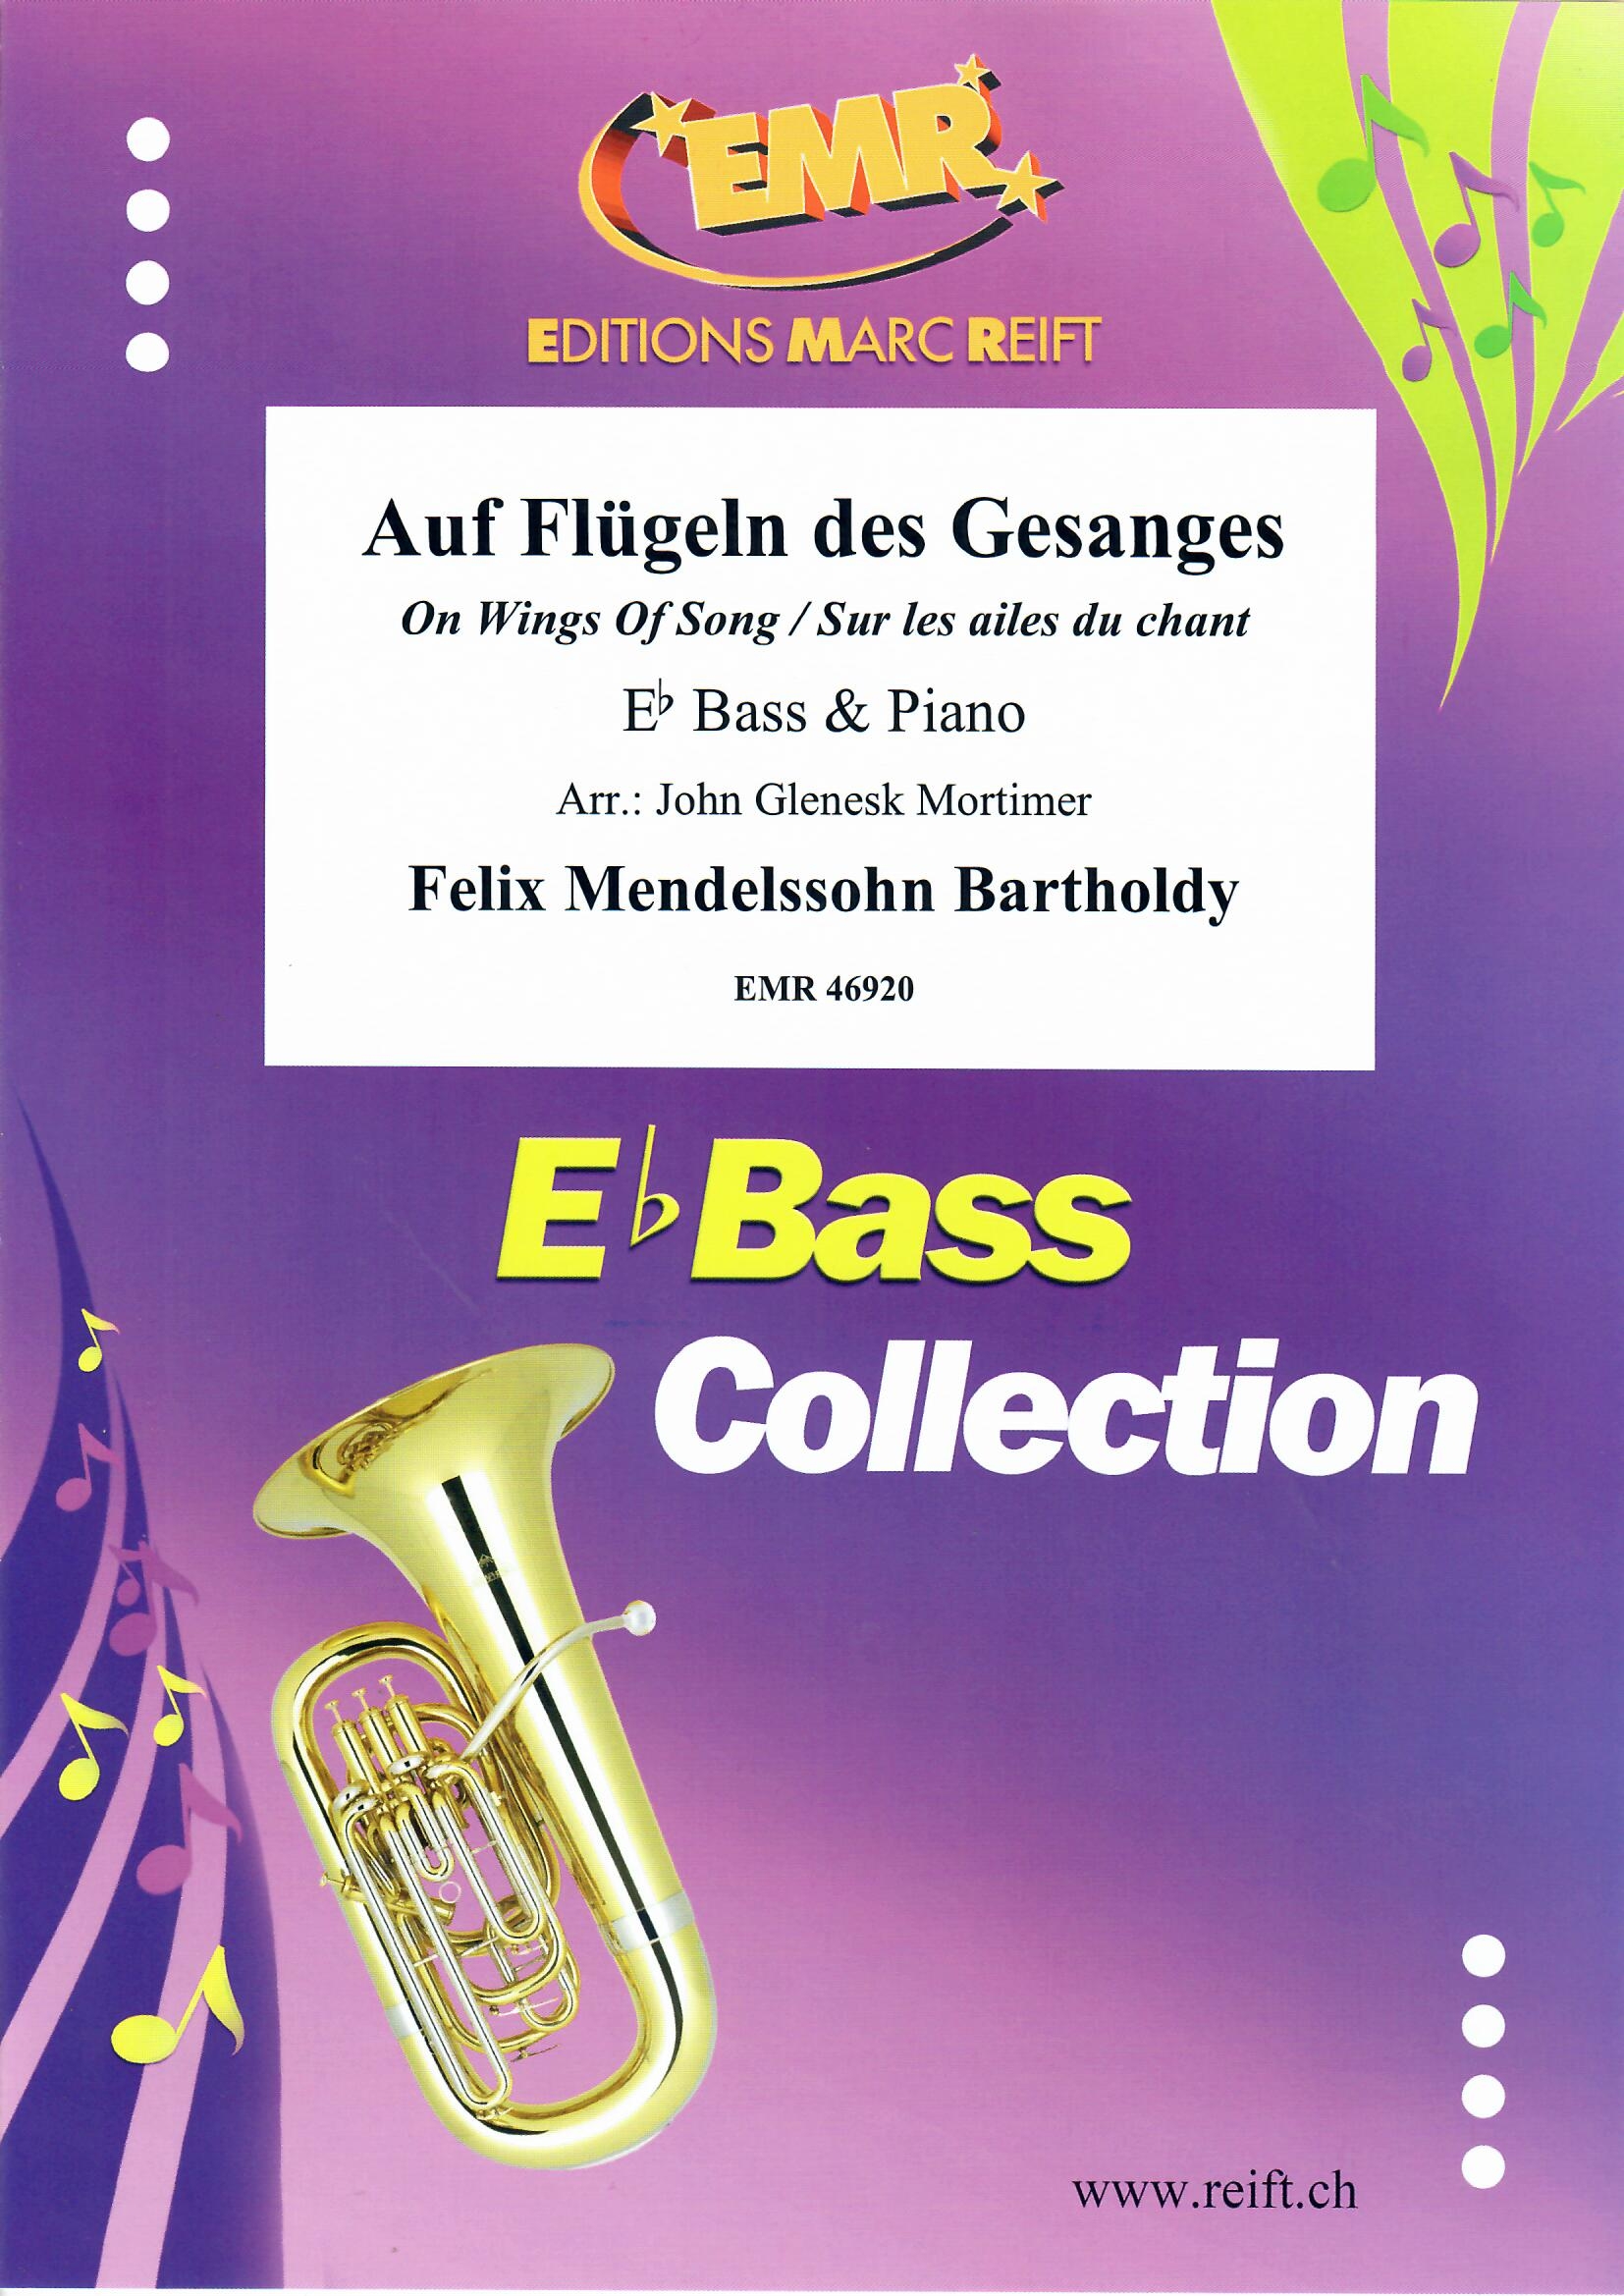 AUF FLüGELN DES GESANGES - Eb.Bass & Piano